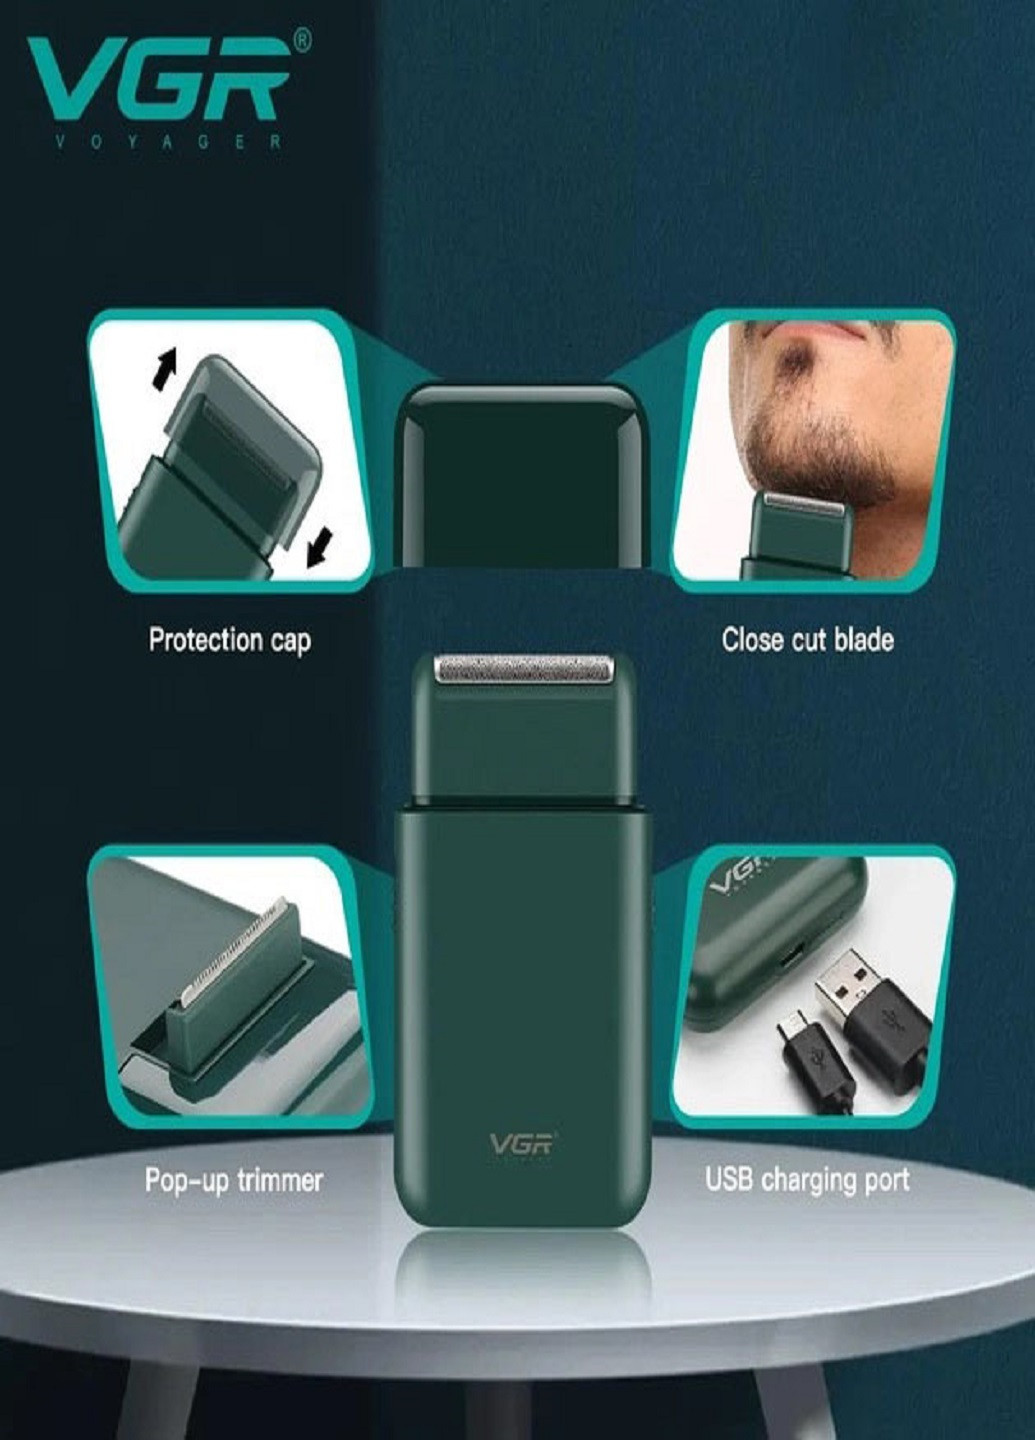 Электробритва V-390 бритва аккумуляторная VGR (277979682)